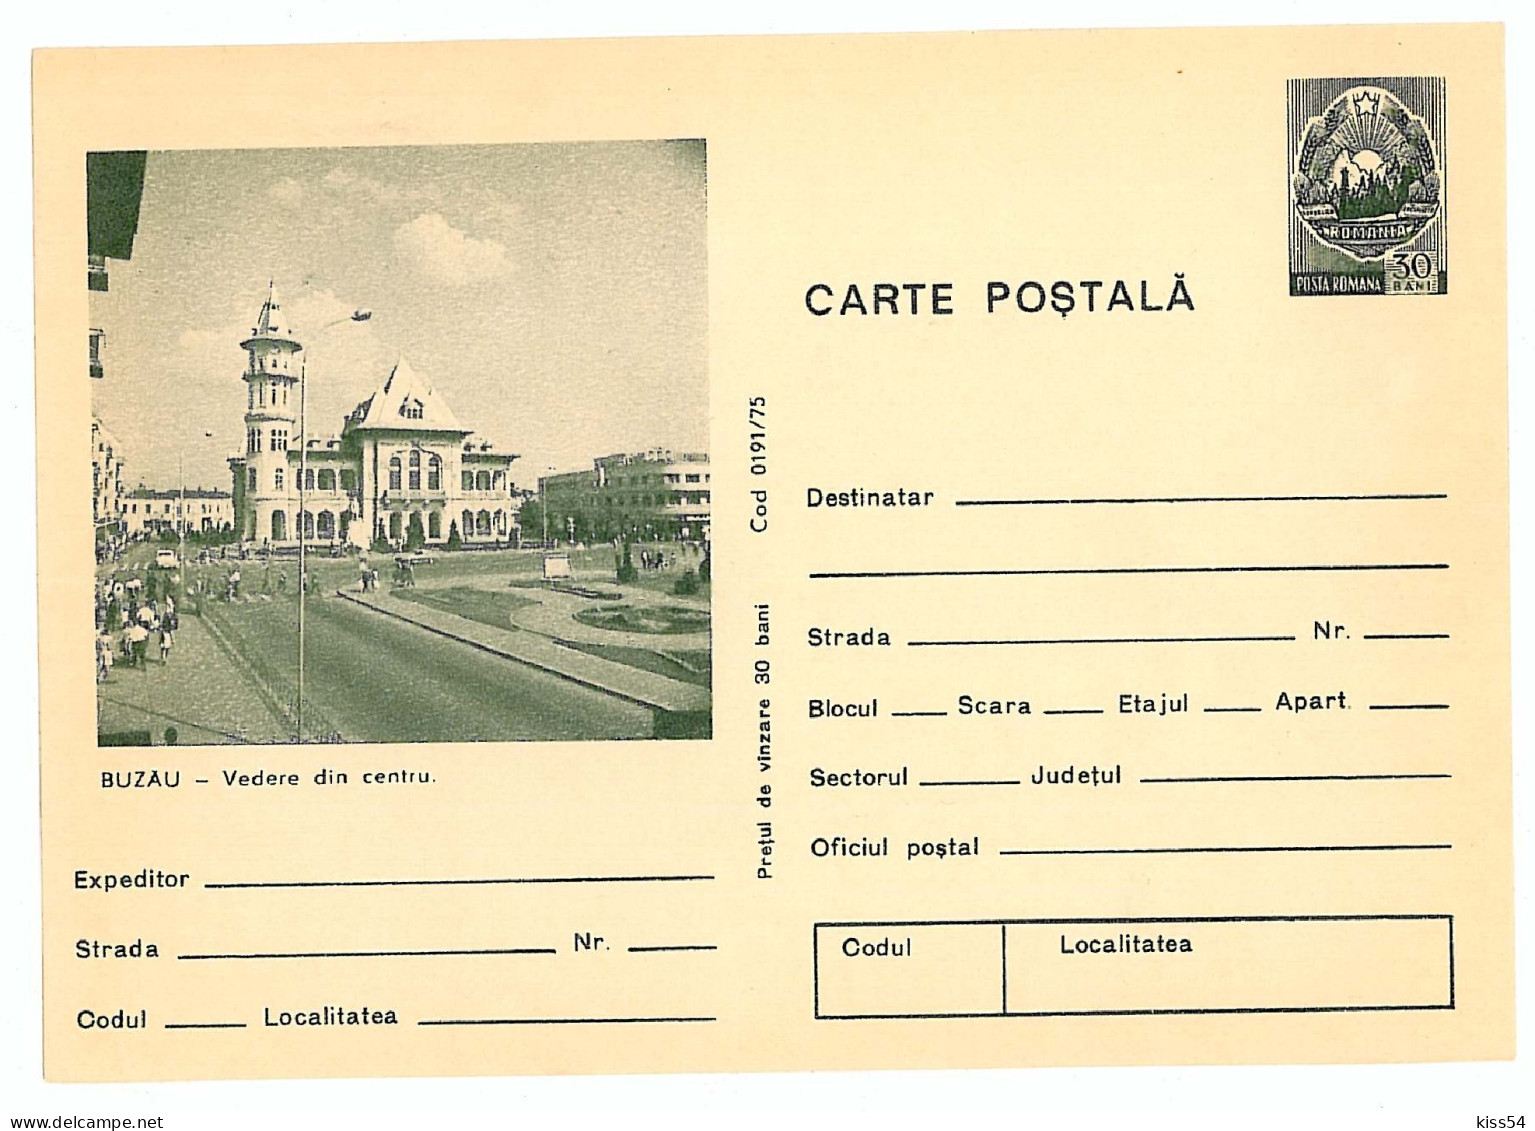 IP 75 - 191 BUZAU - Stationery - Unused - 1975 - Postal Stationery